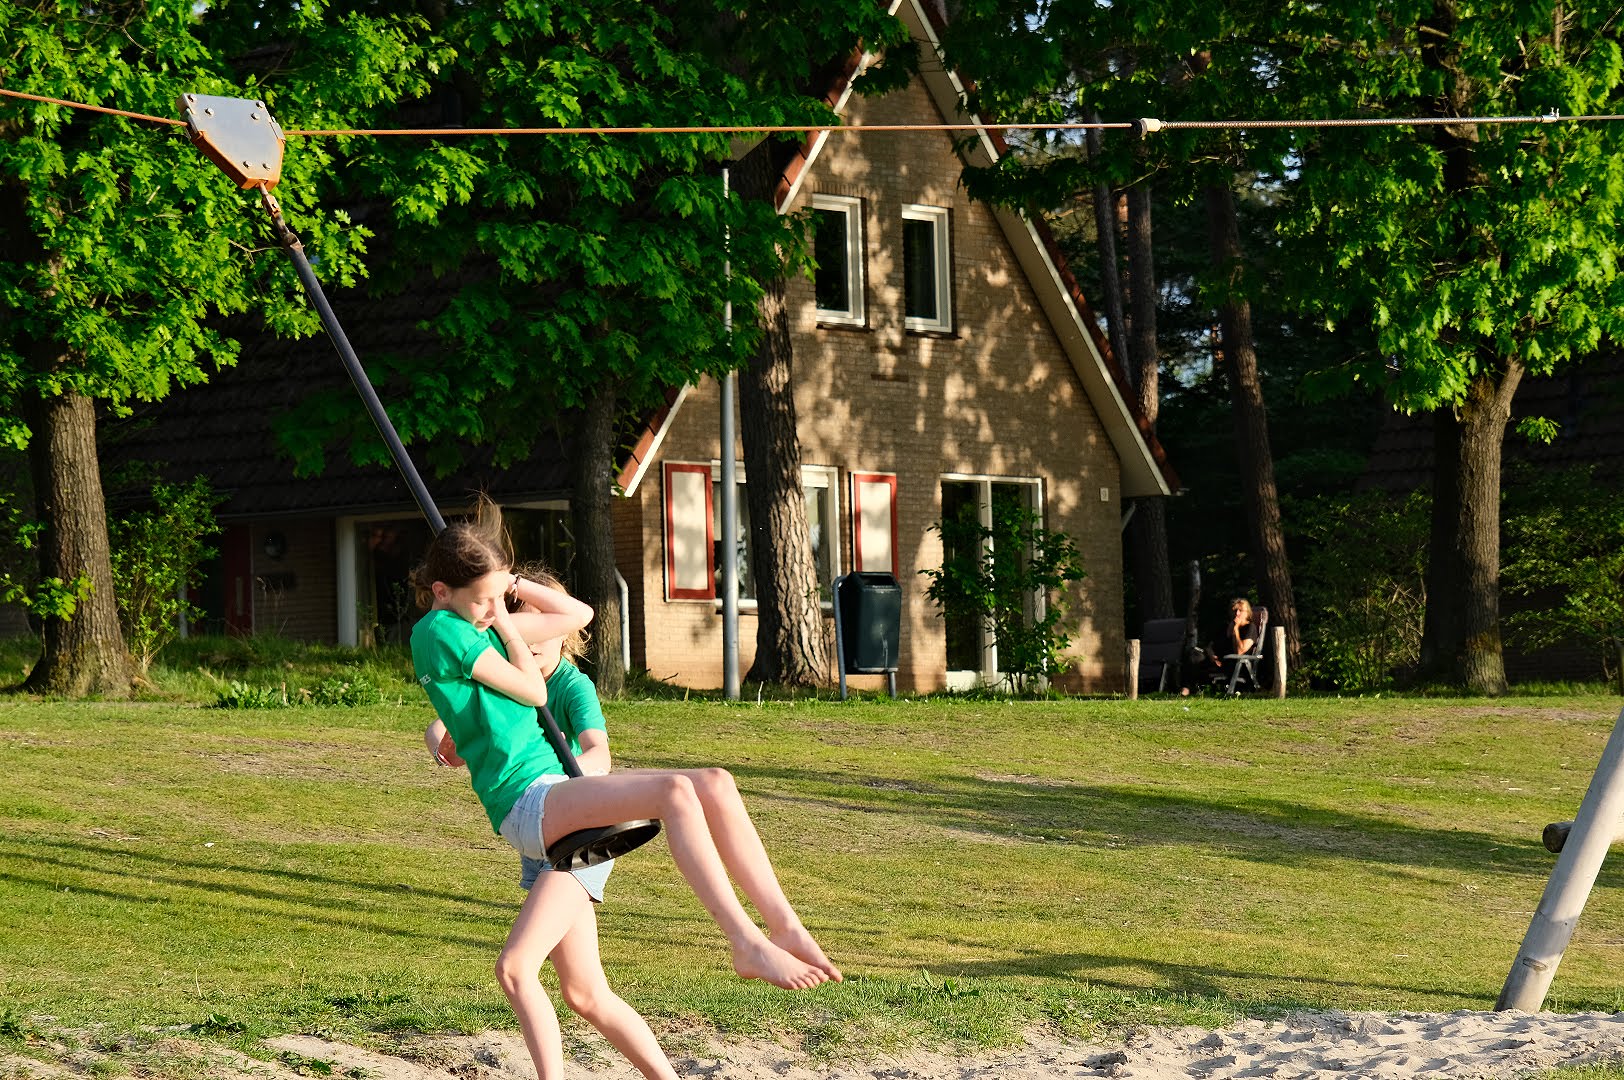 Er is momenteel een ware run gaande op vakantiehuisjes en bungalows op vakantieparken in Nederland